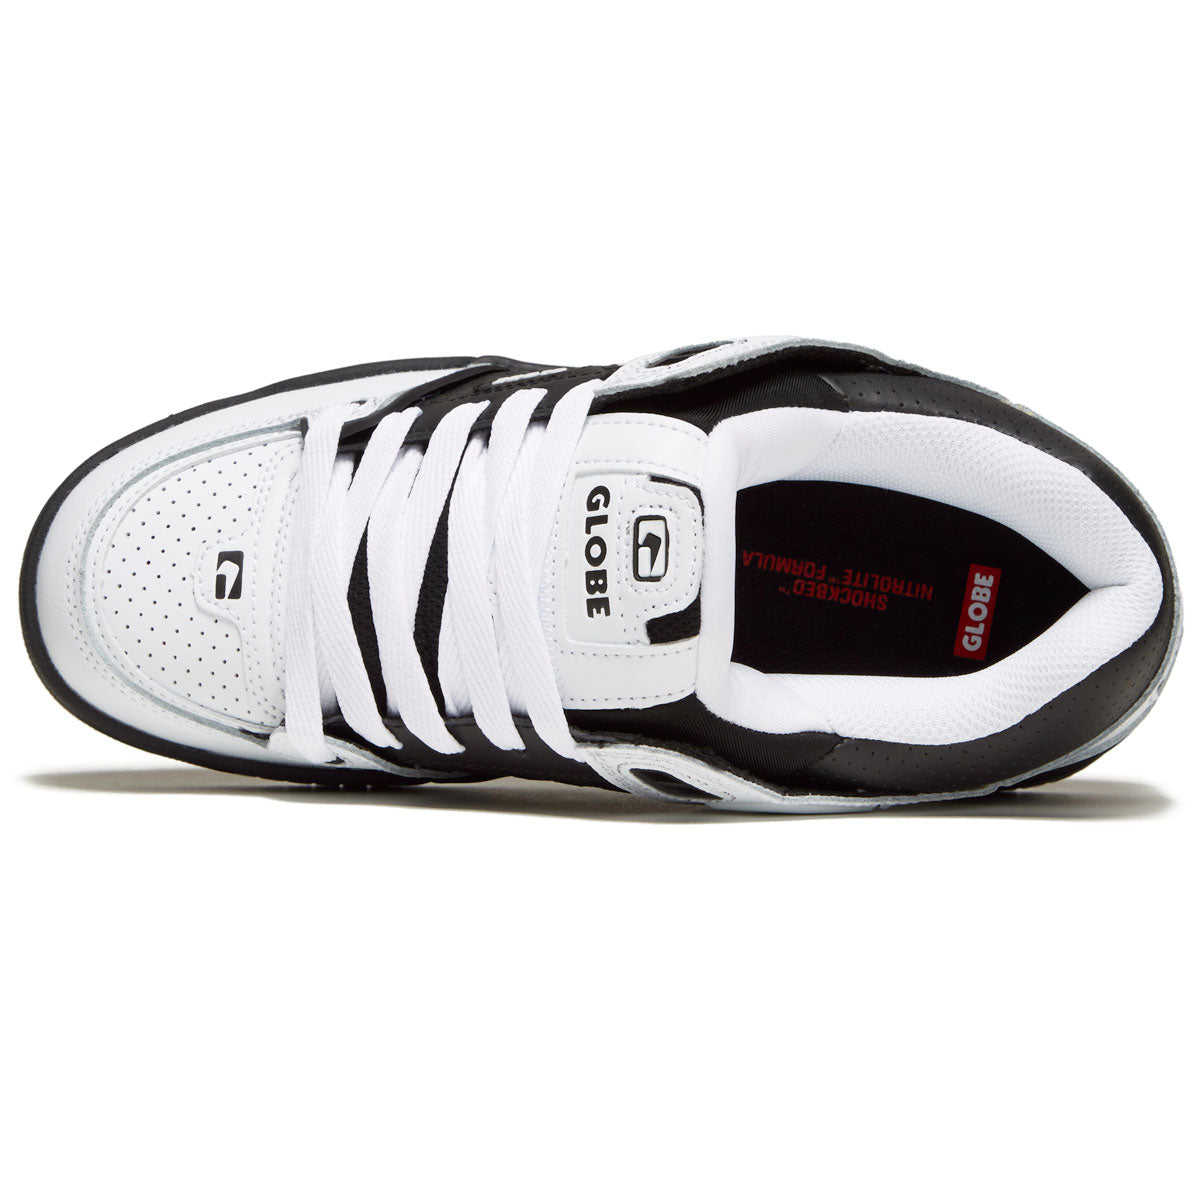 white globe skate shoes